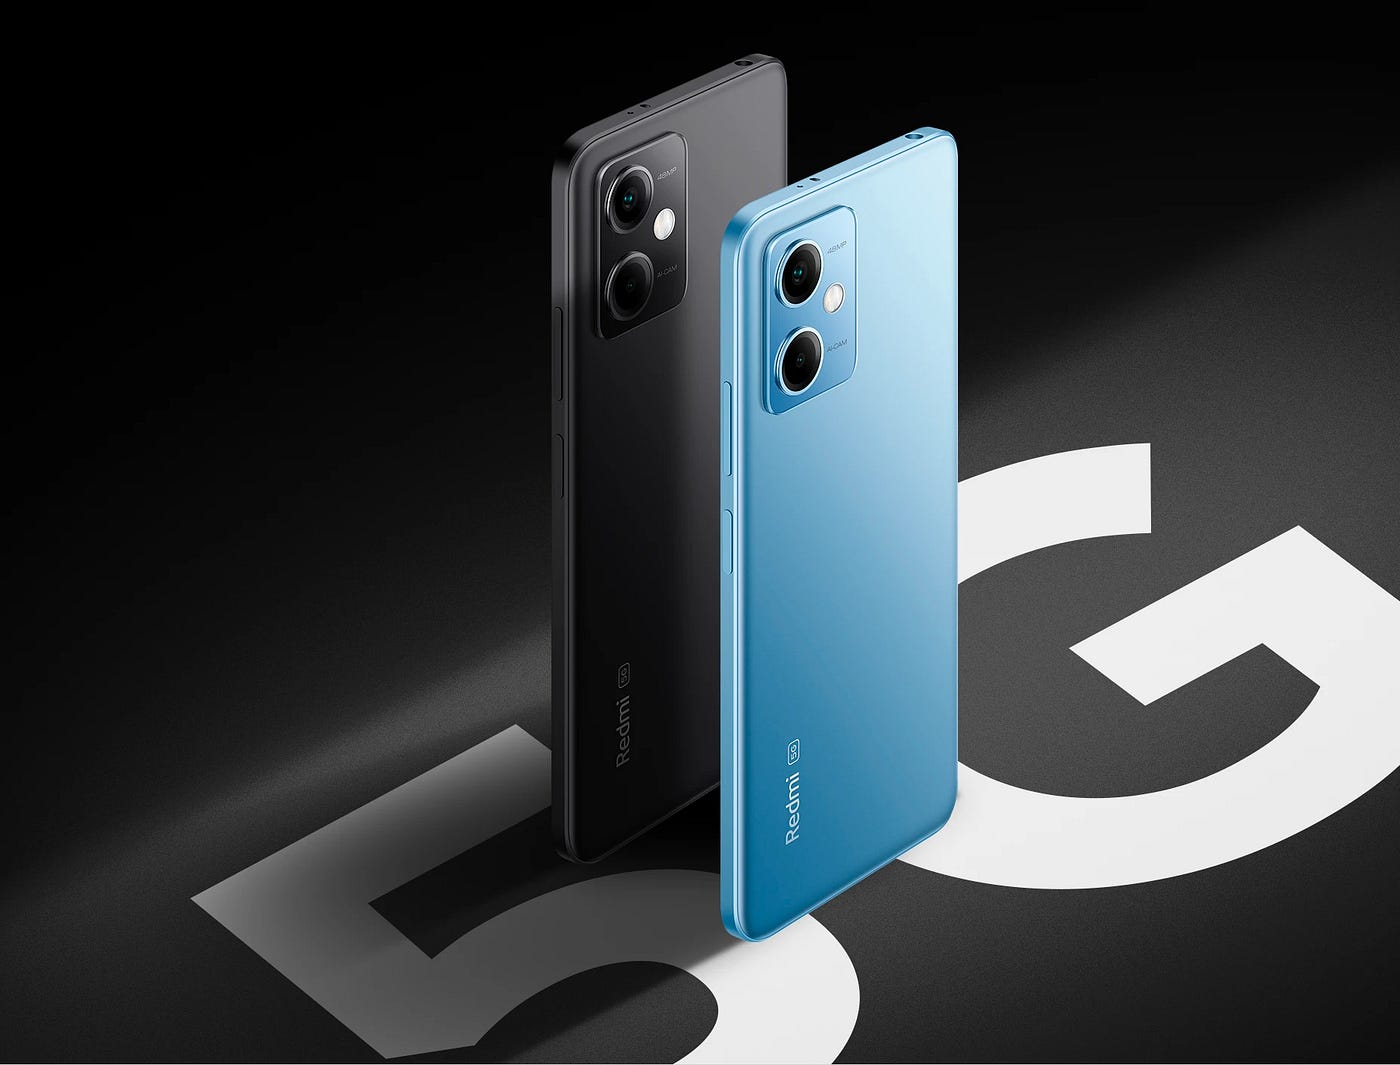 Poco X6 5G: A Glimpse into the Future of Smartphones